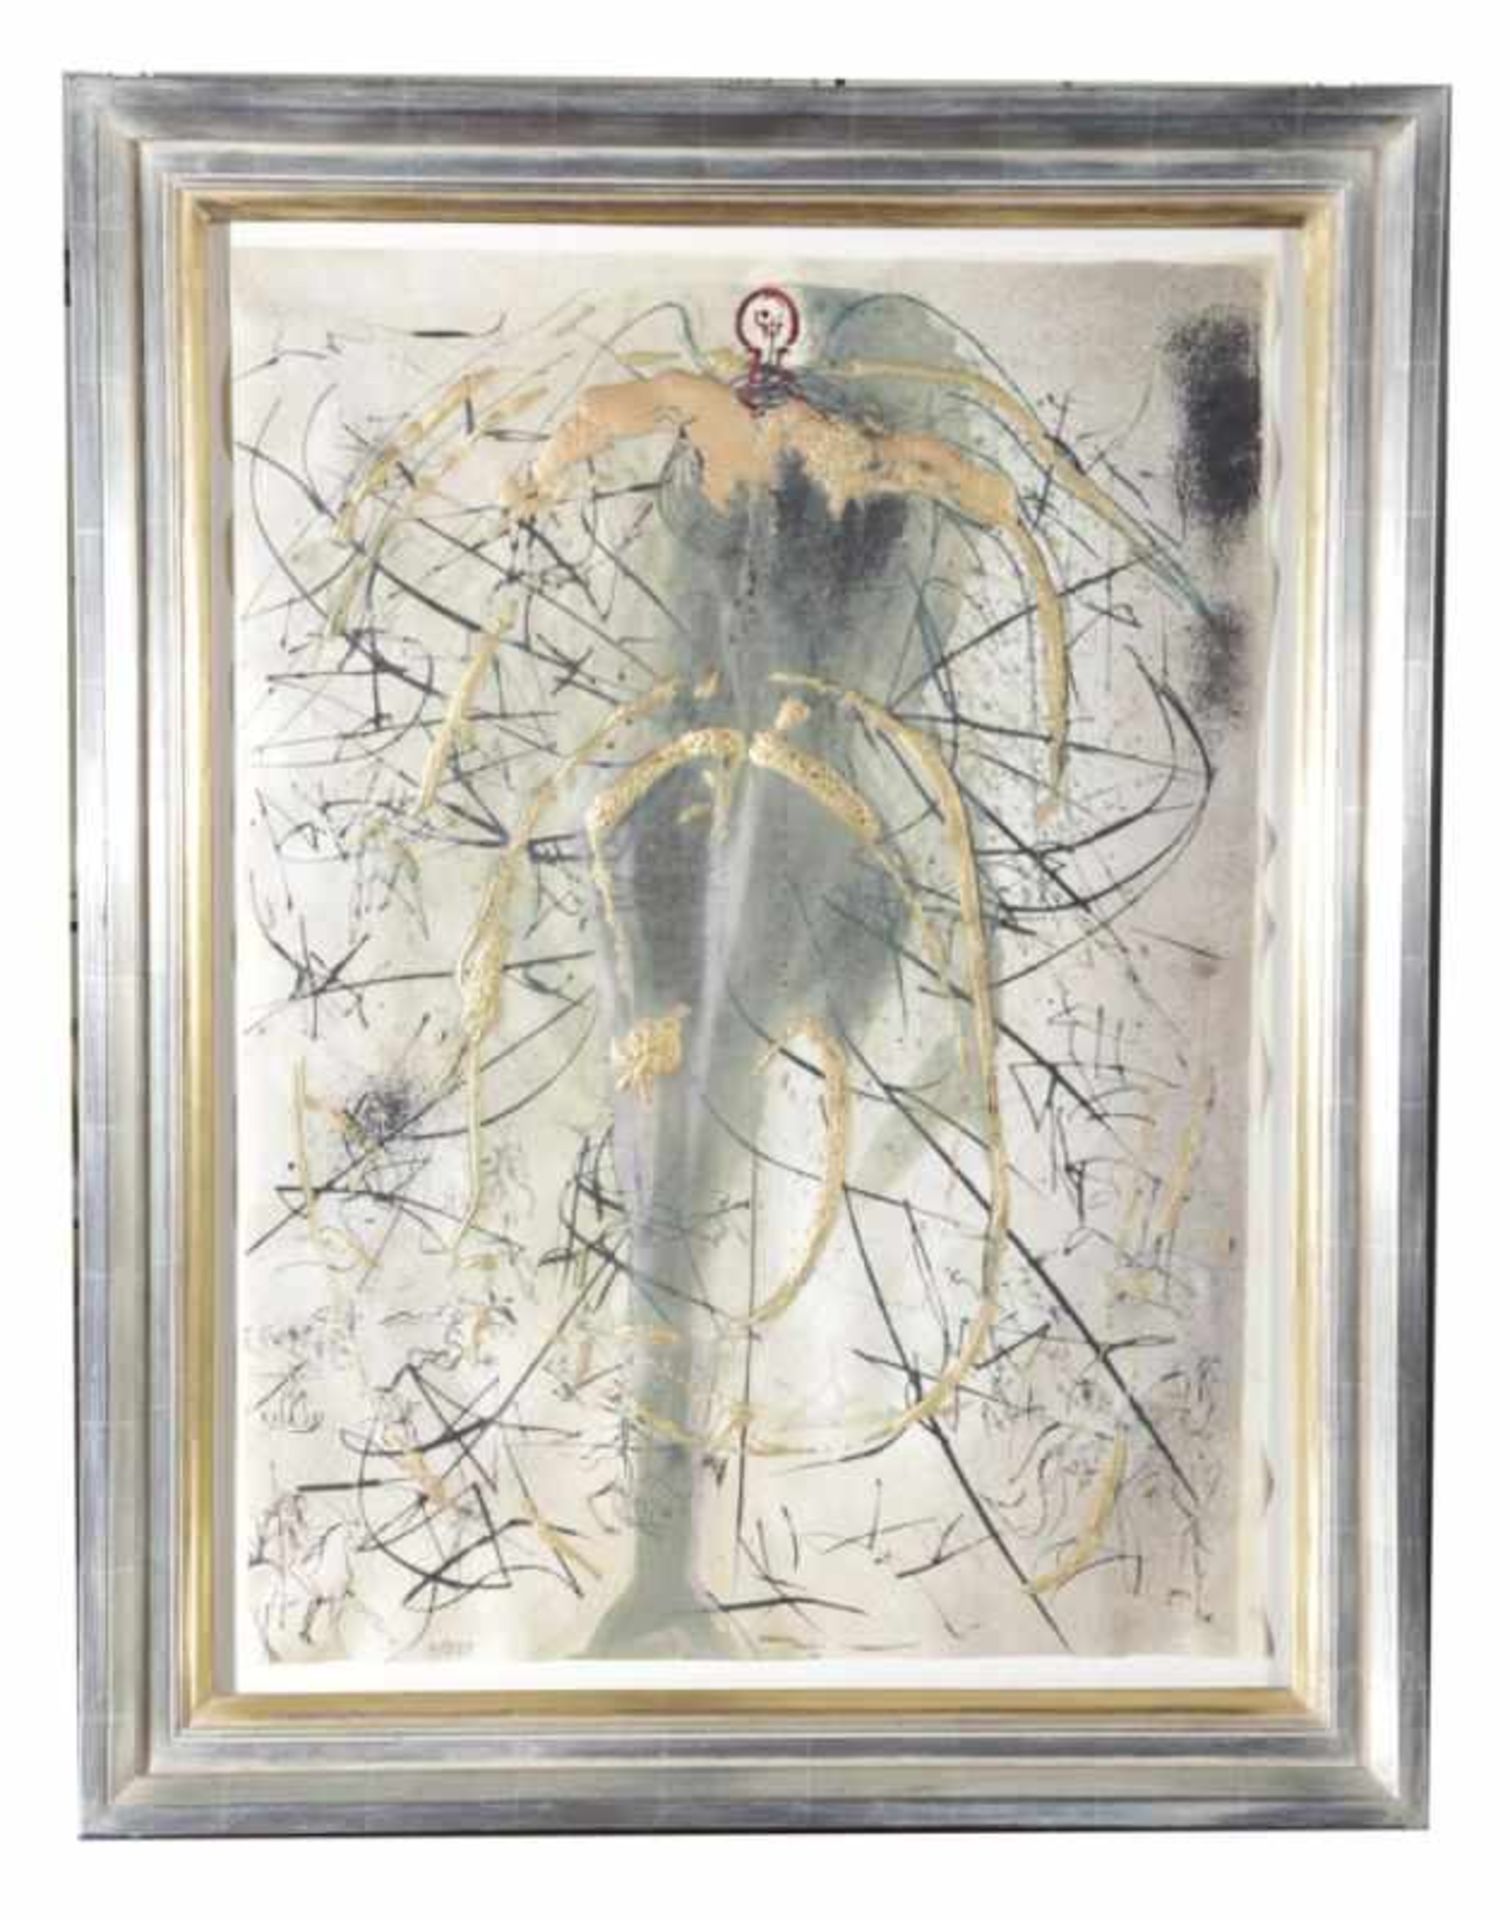 Dali, Salvadore, Figueras 1904 - 1989 ebenda. "Der Engel der Alchimie", Kaltnadelradierungmit